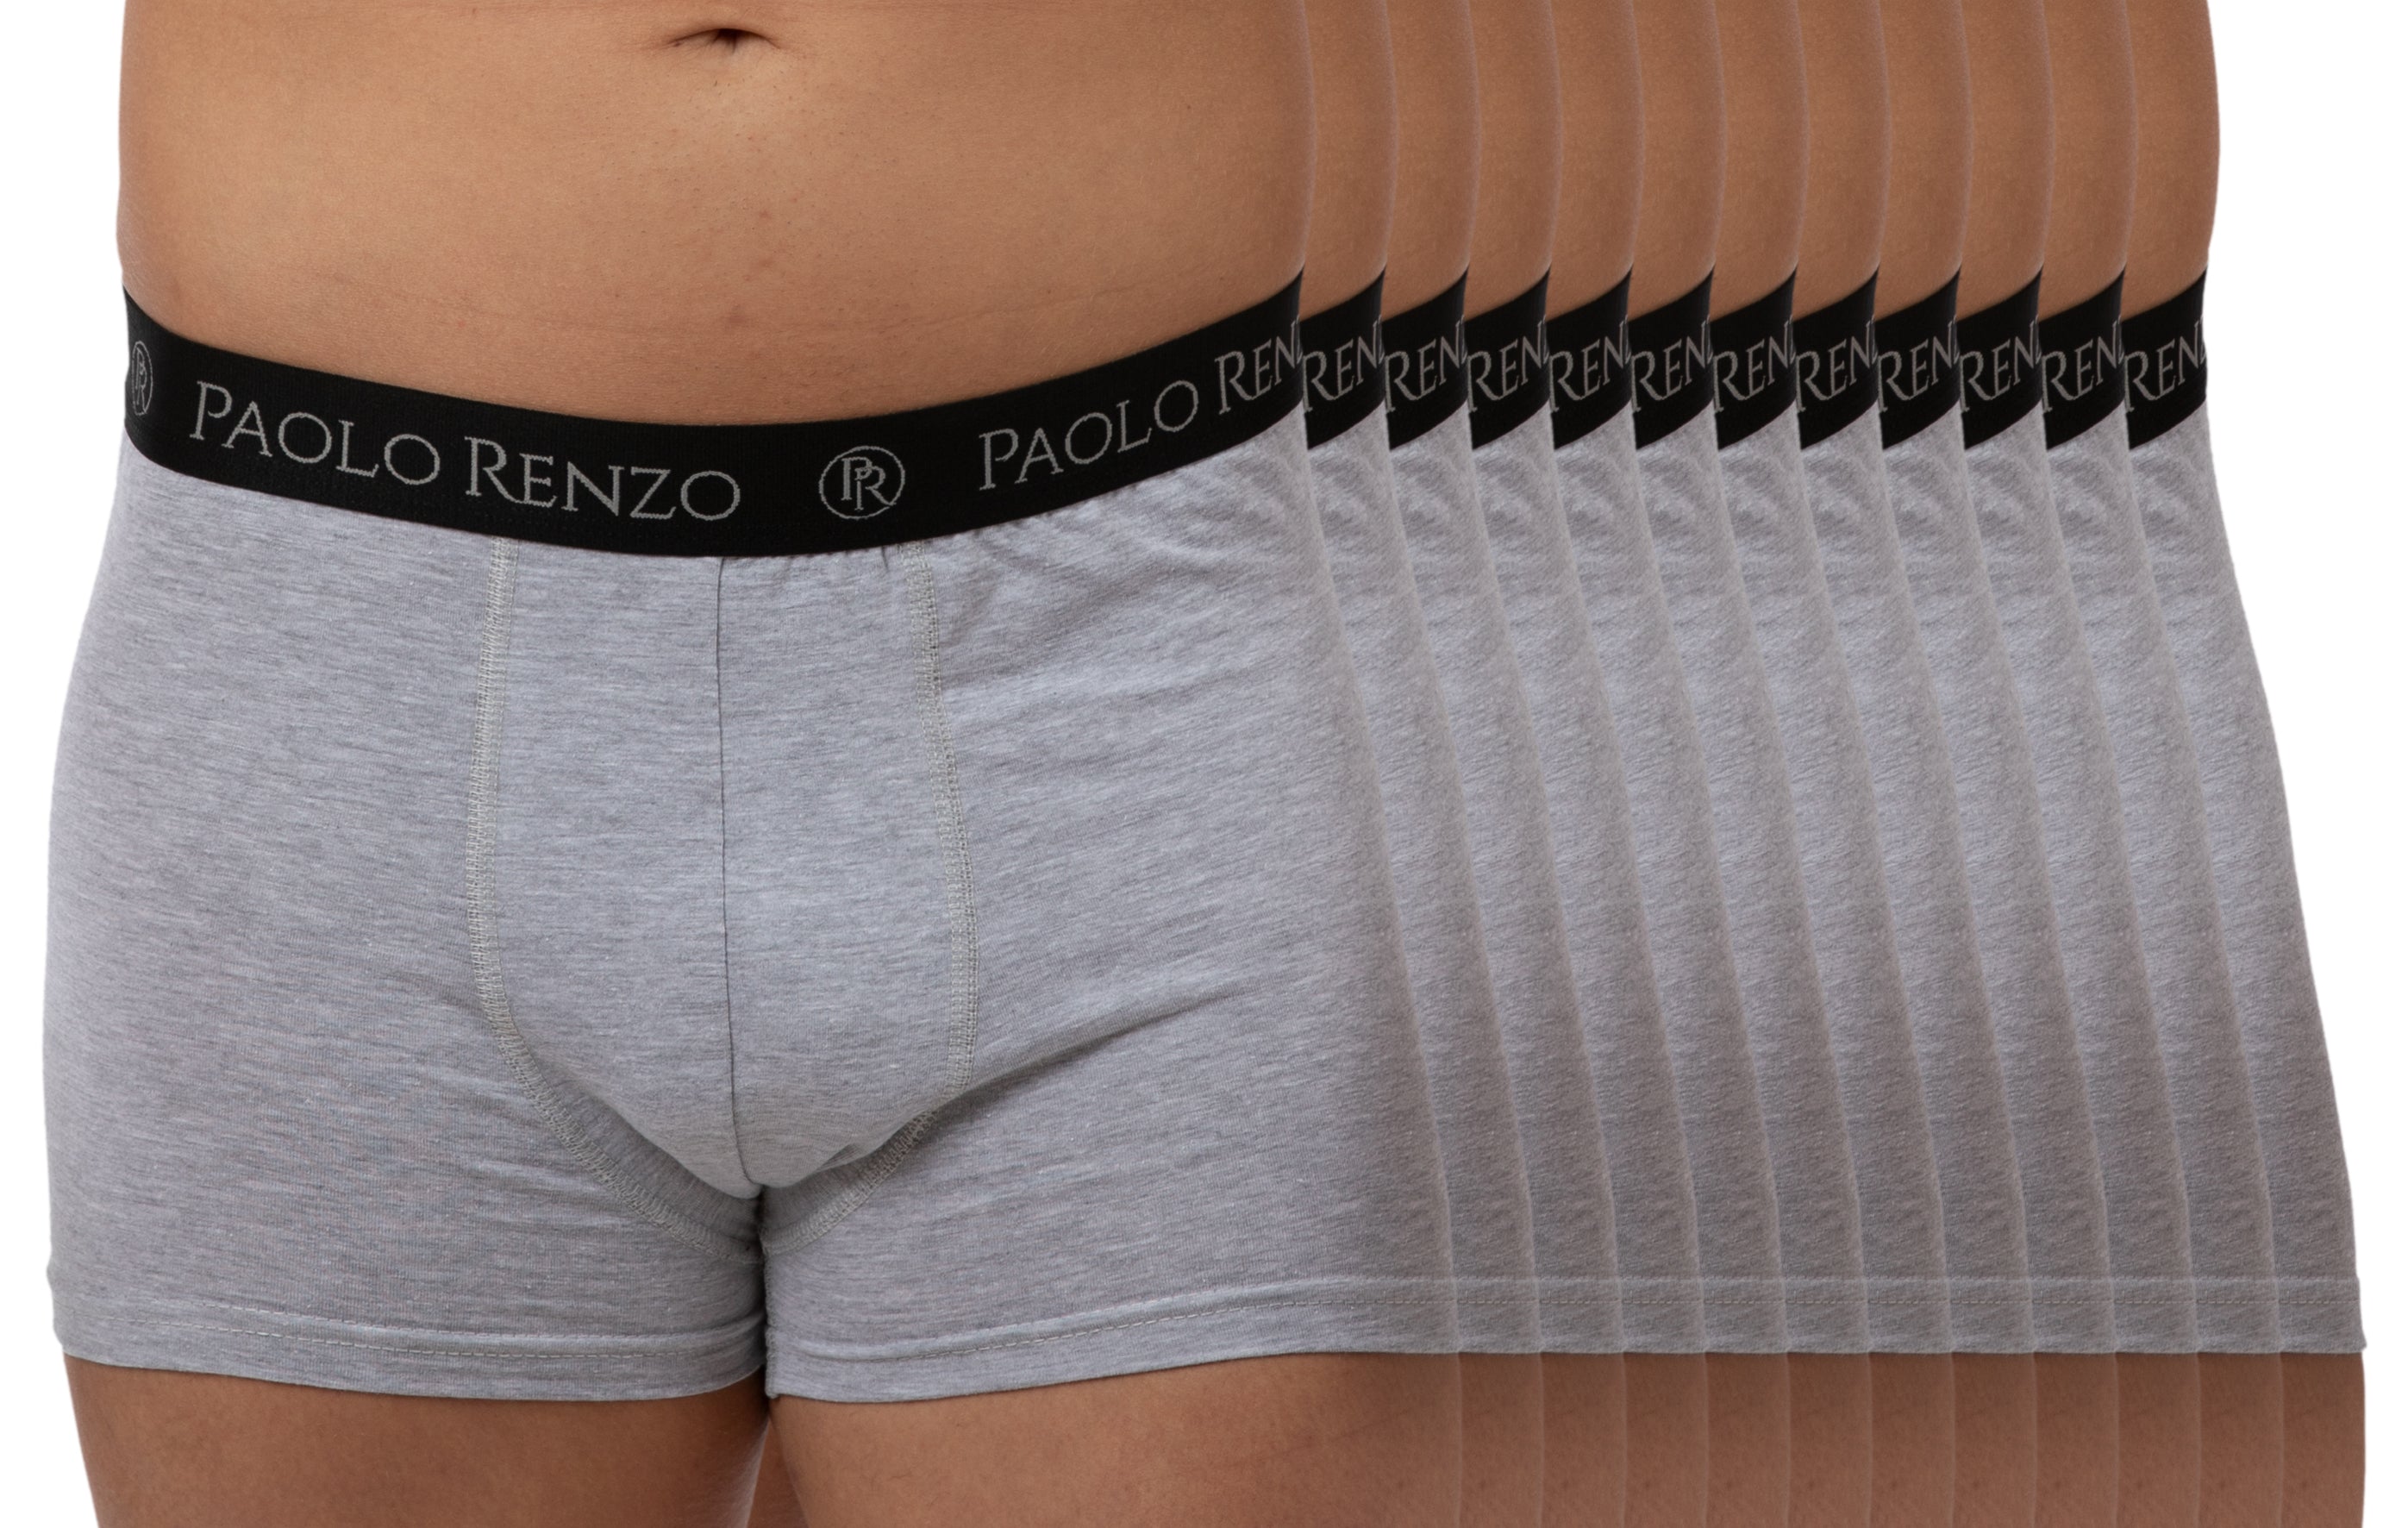 oder Größen Boxershorts Stück Hipster Paolo 12 3/6 L, – - M, XL, Traumpreisfabrik Renzo®